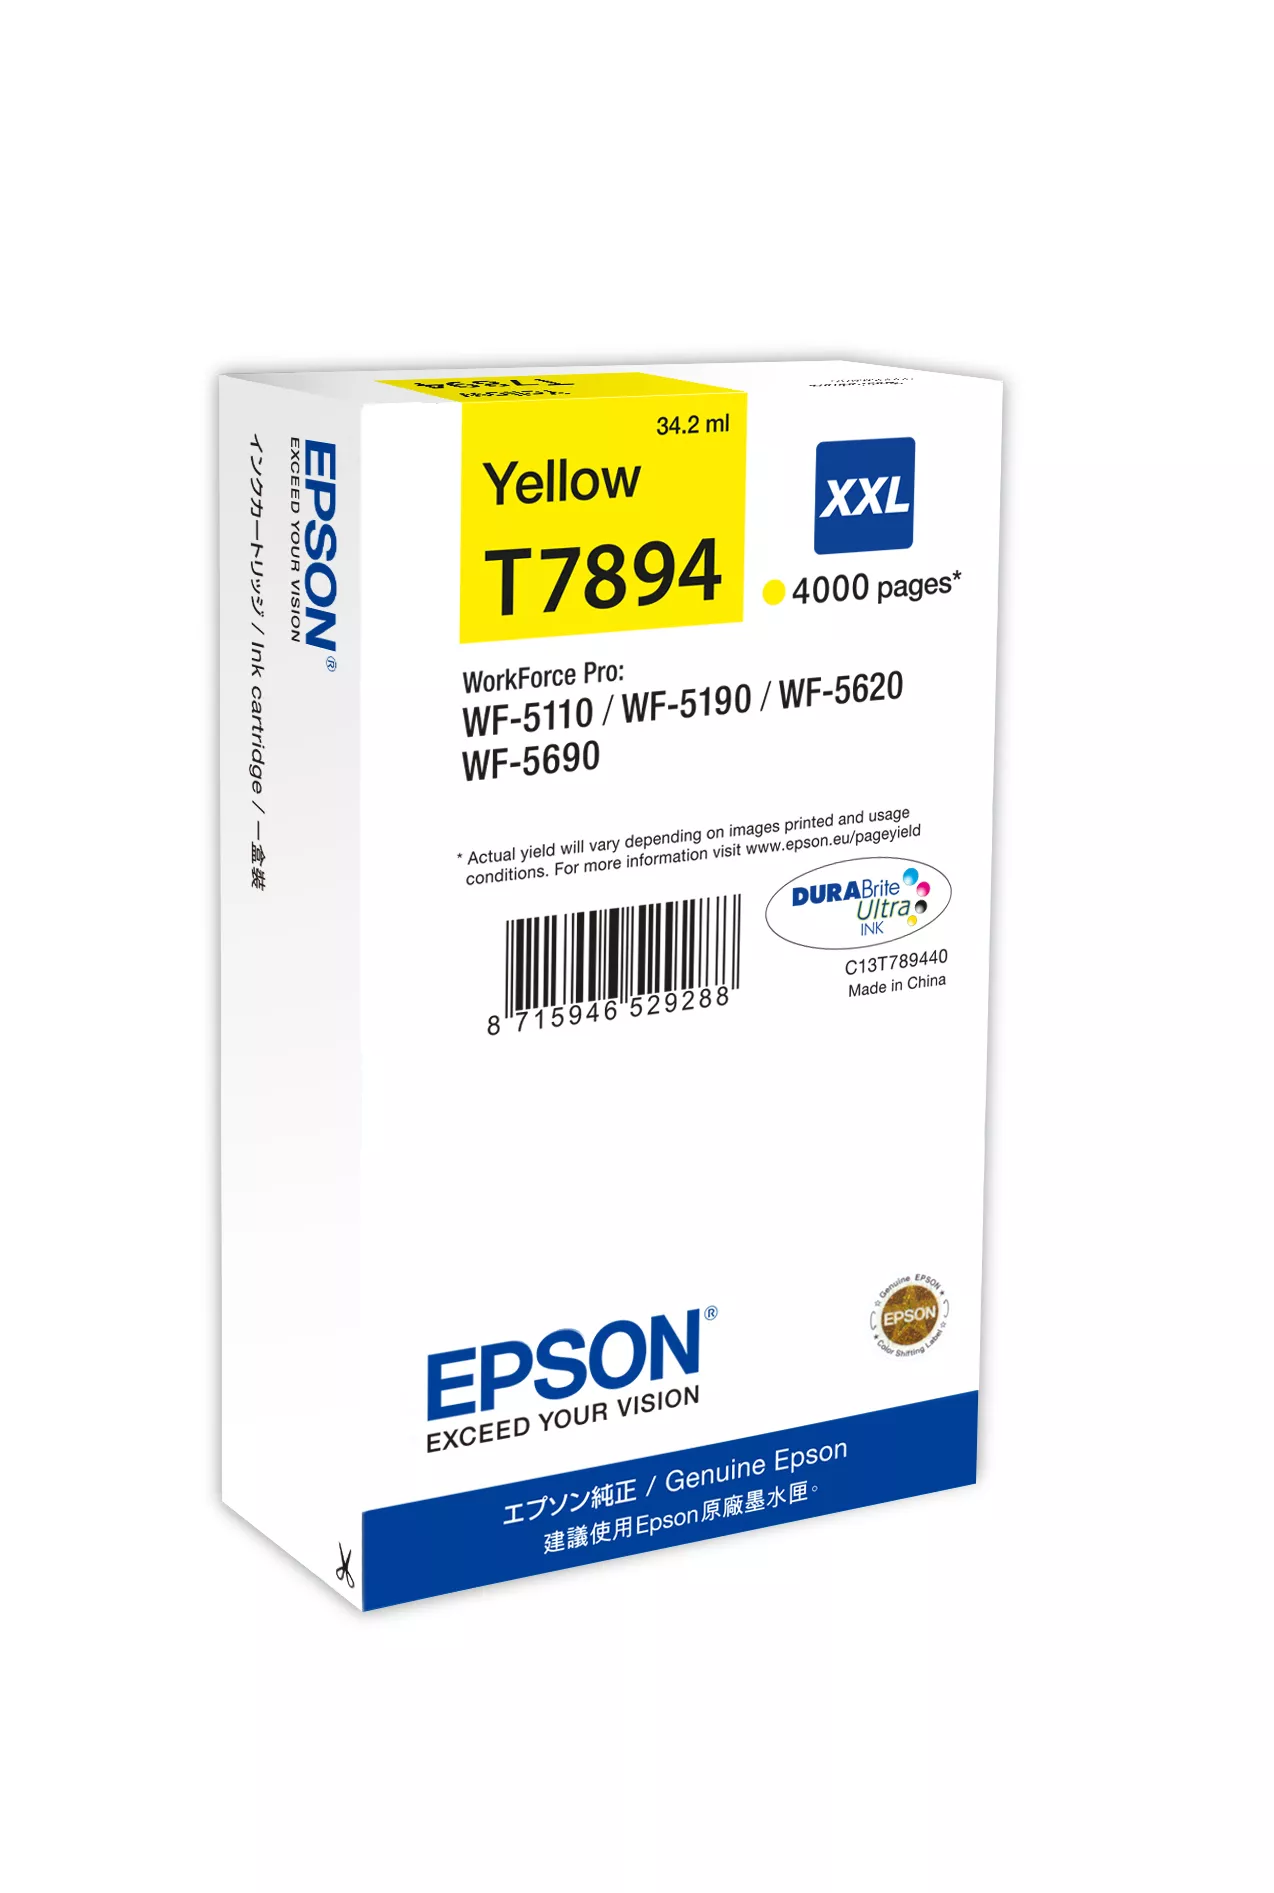 Achat EPSON T7894 cartouche d encre jaune très haute capacité 4 - 8715946529288